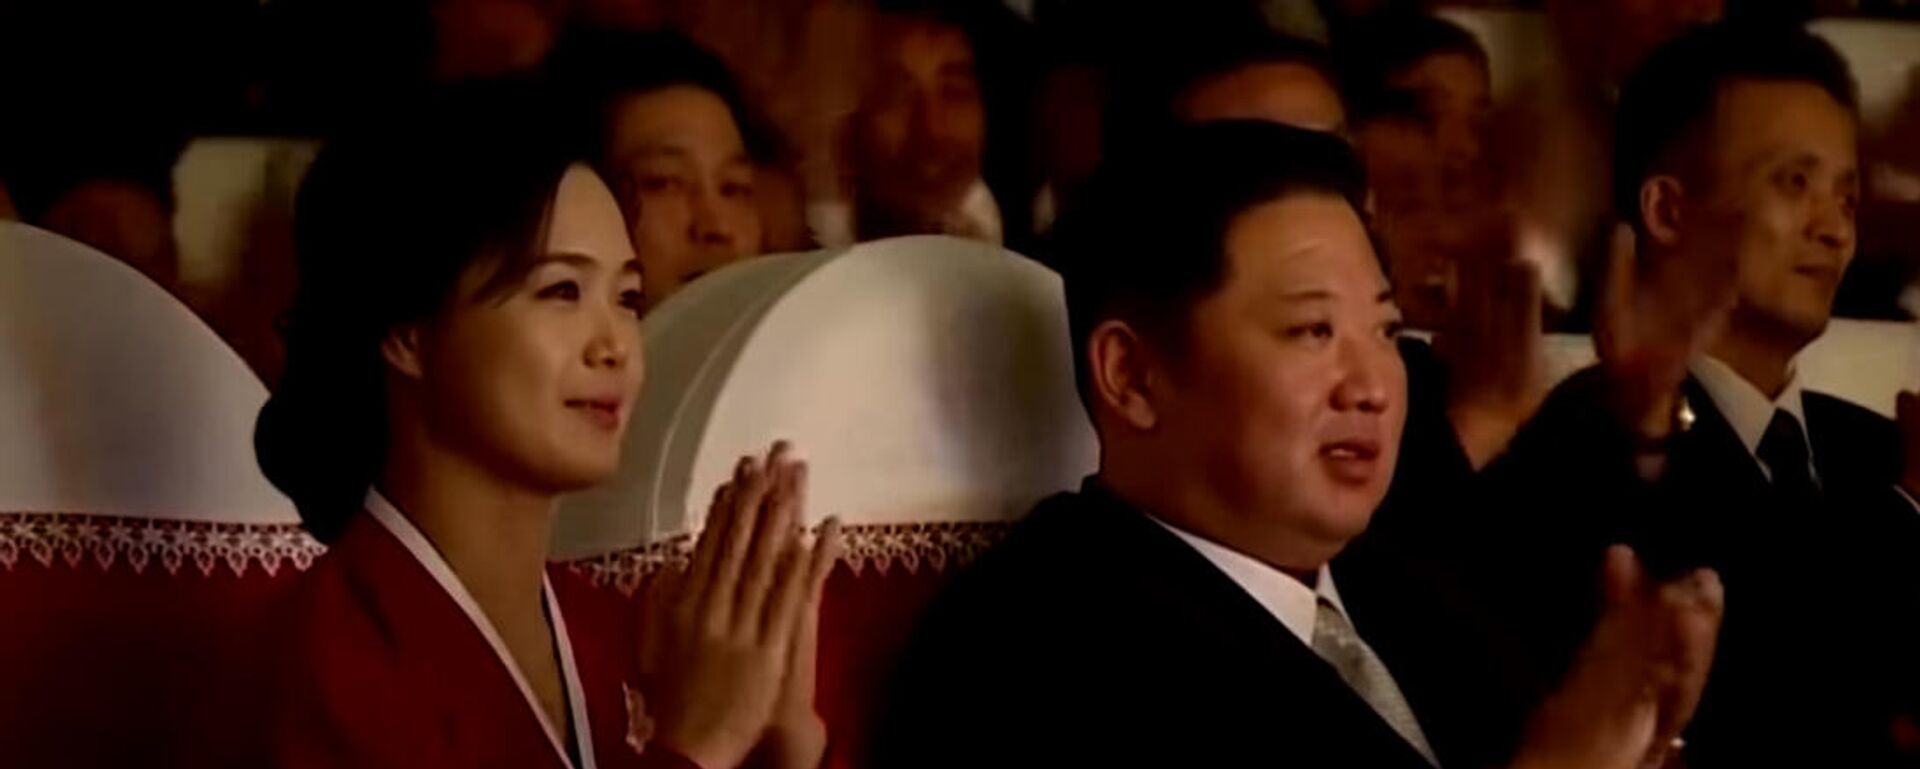 Ким Чен Ындын жубайы көптөн бери эл алдына биринчи ирет чыкты. Видео - Sputnik Кыргызстан, 1920, 04.02.2022